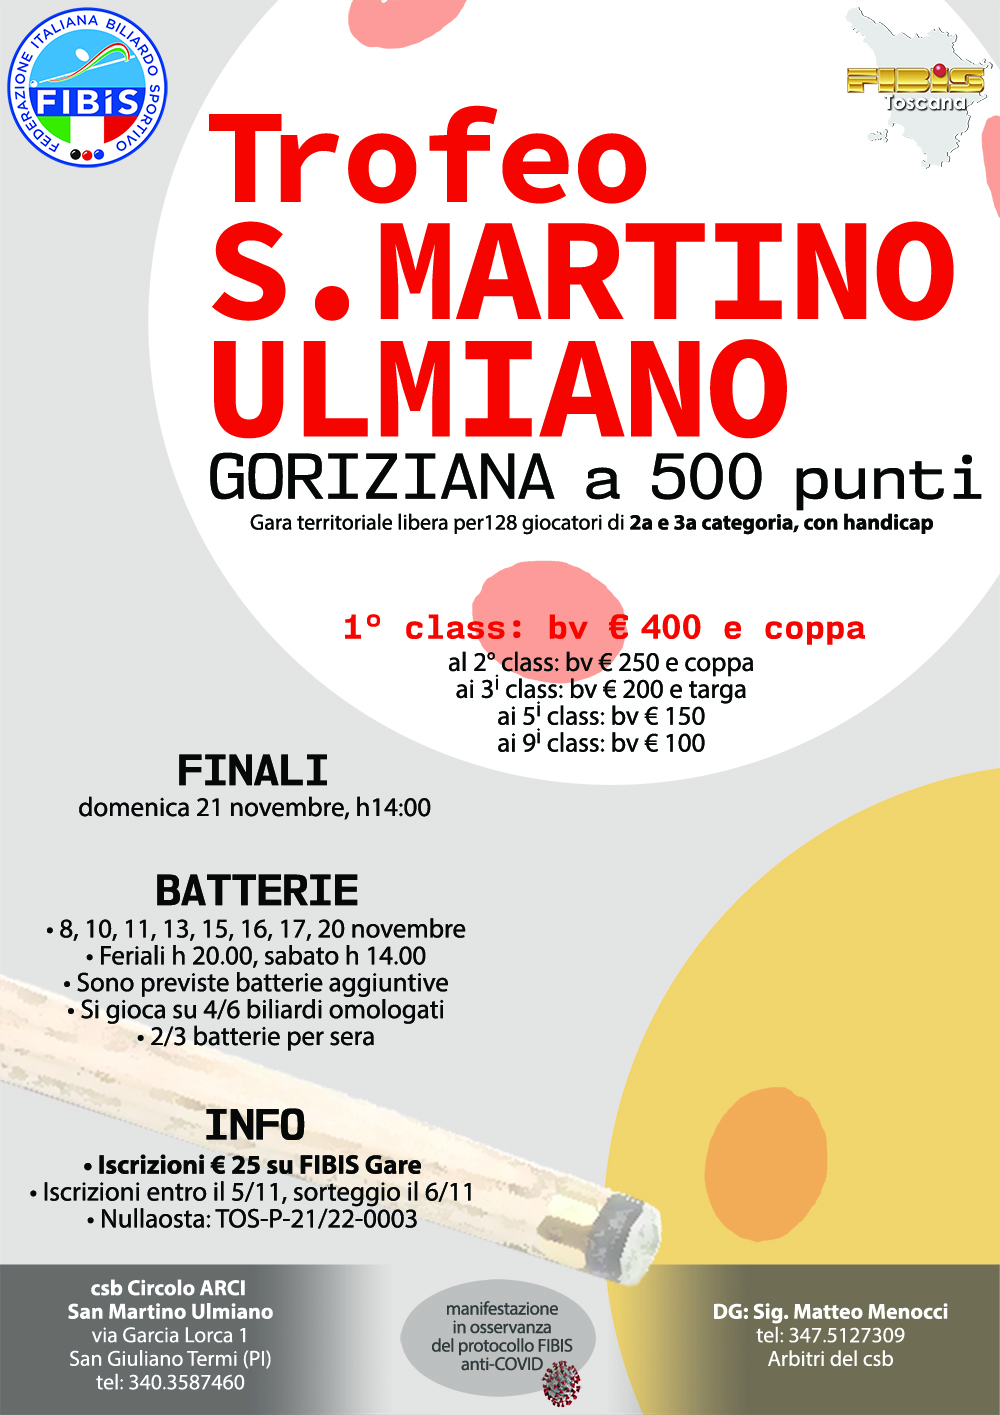 Trofeo San Martino Ulmiano